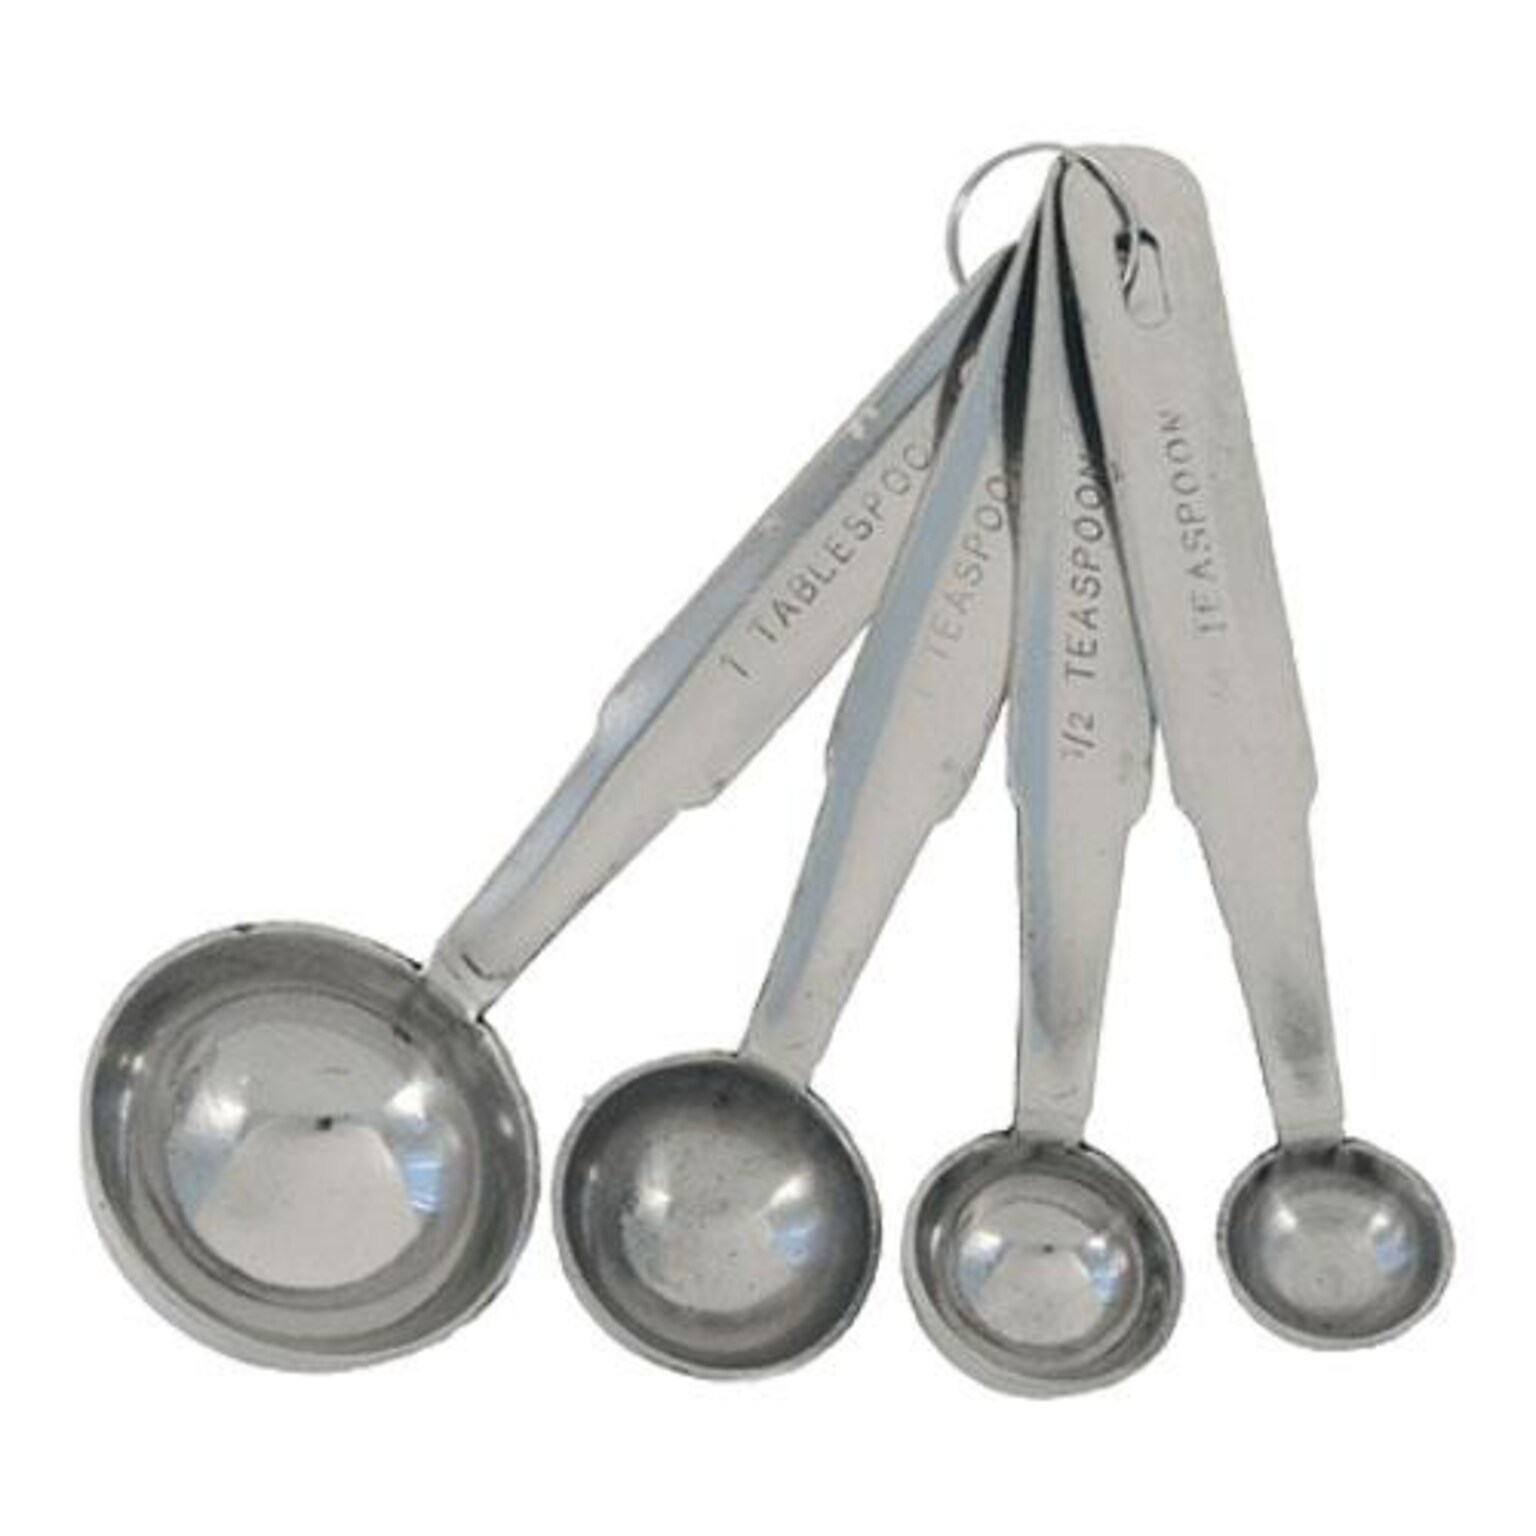 Crestware Stainless Steel Measuring Spoon Set (MEASPHD)